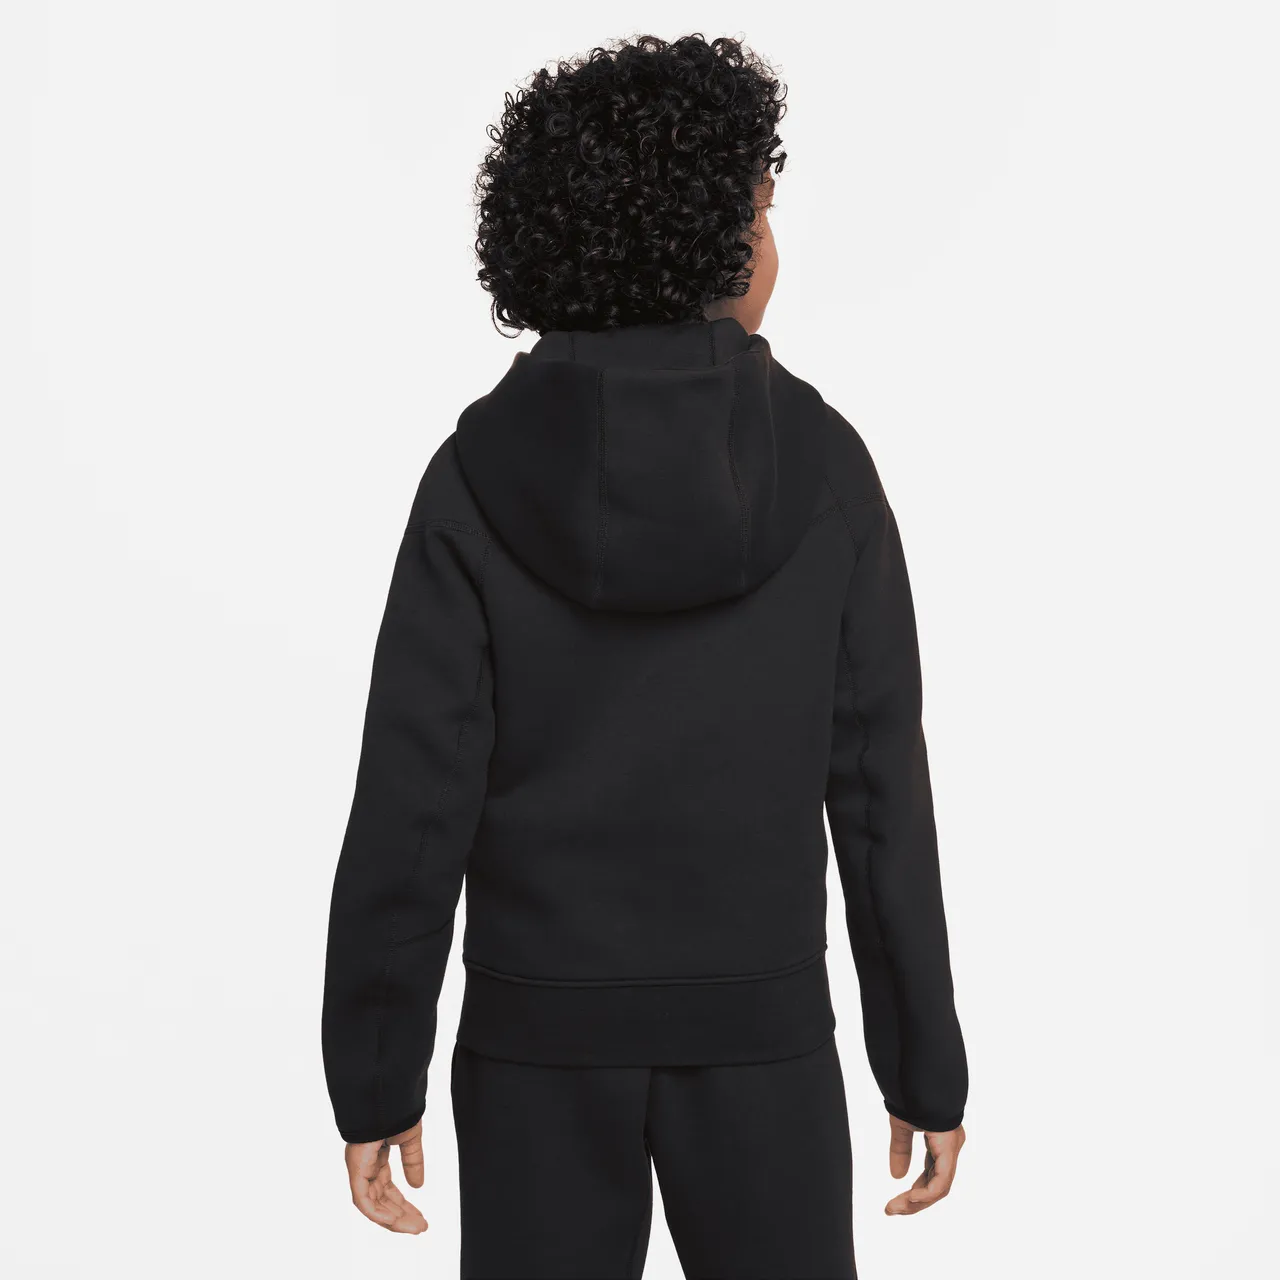 Nike Sportswear Tech Fleece Kapuzenjacke für ältere Kinder (Jungen) - Schwarz